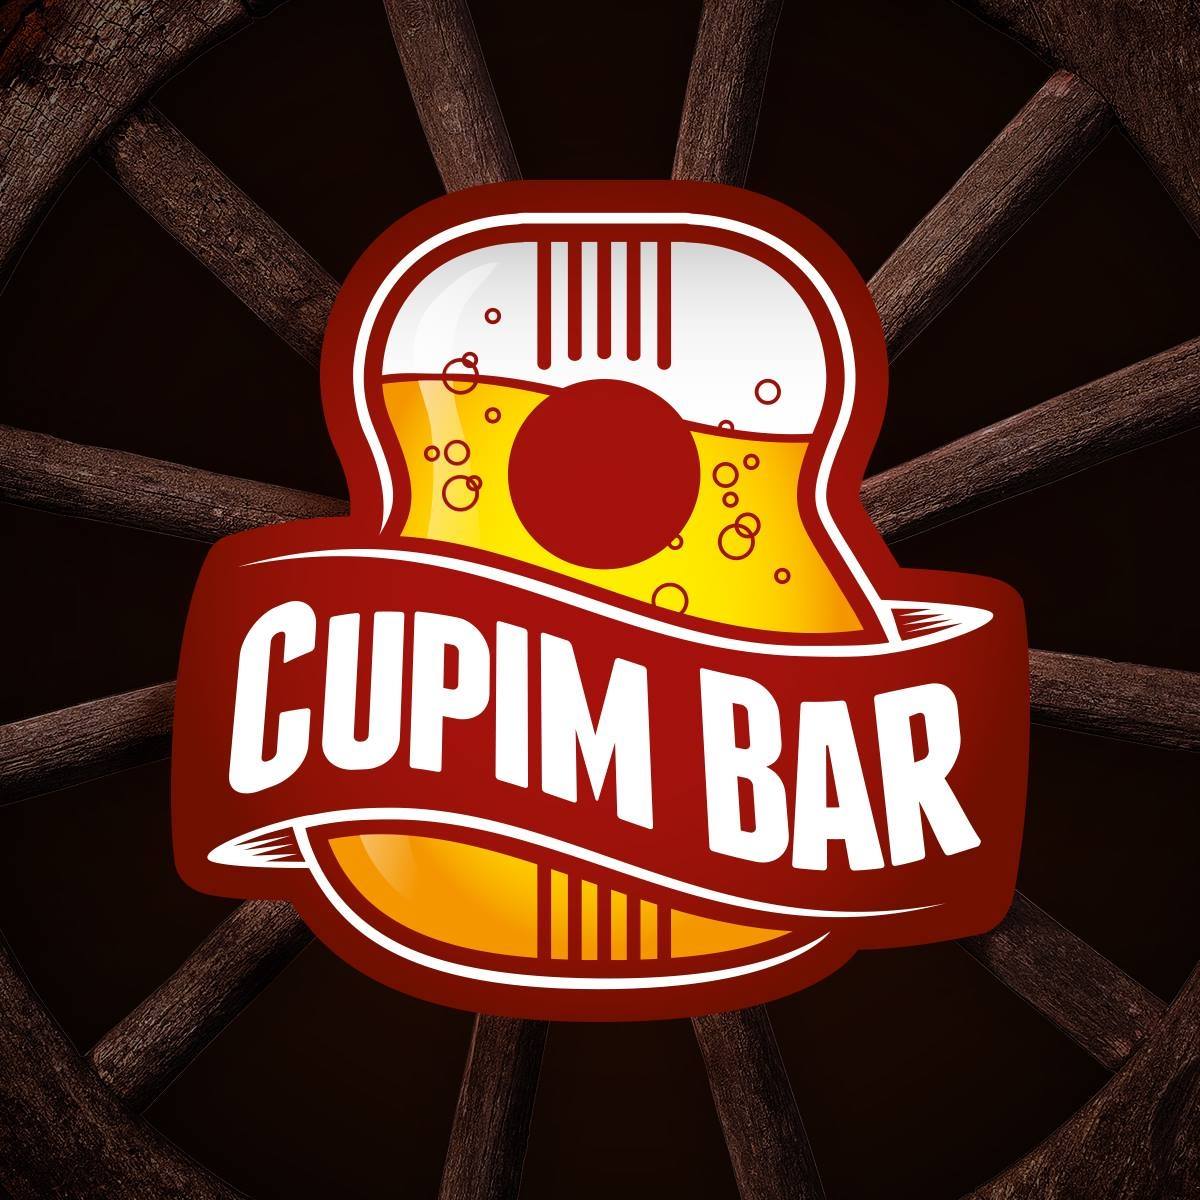 Cupim bar 2